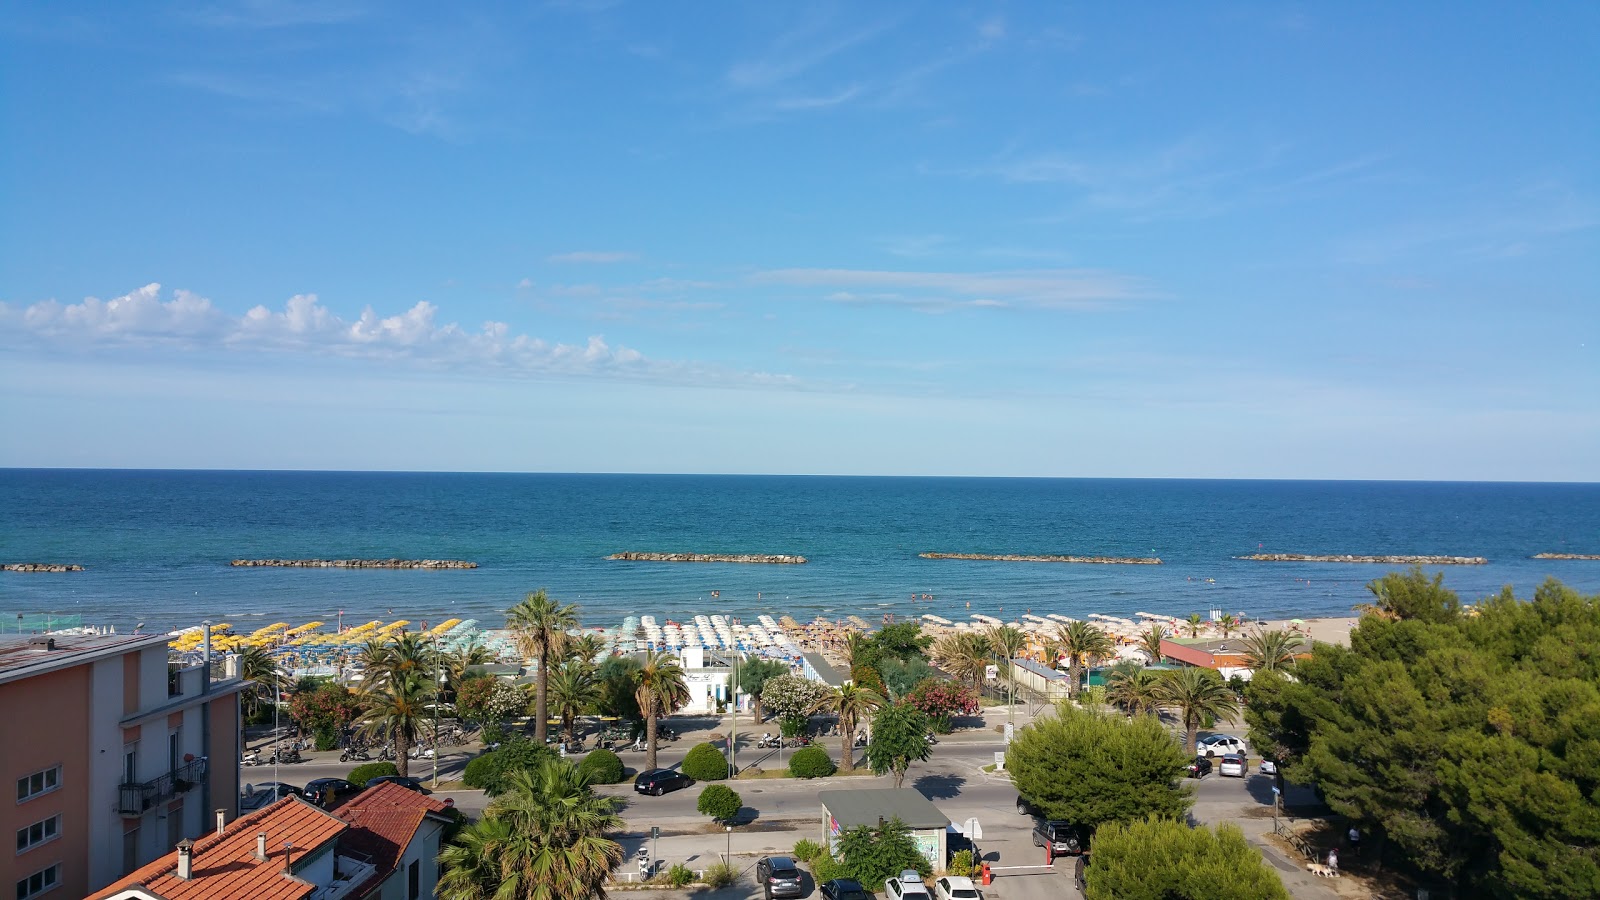 Spiaggia Campo Europa'in fotoğrafı ve yerleşim